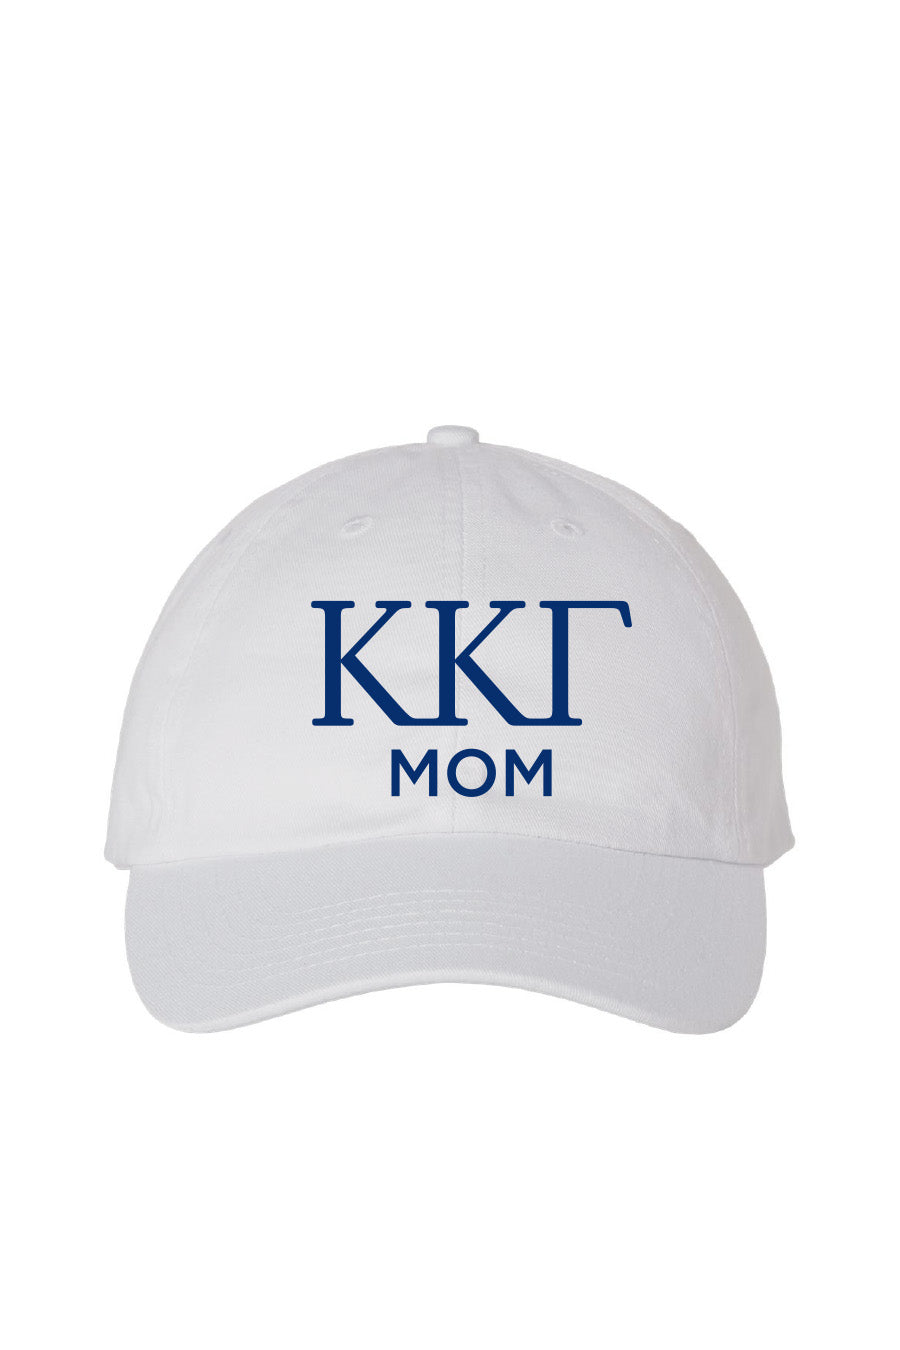 KKG Mom Hat